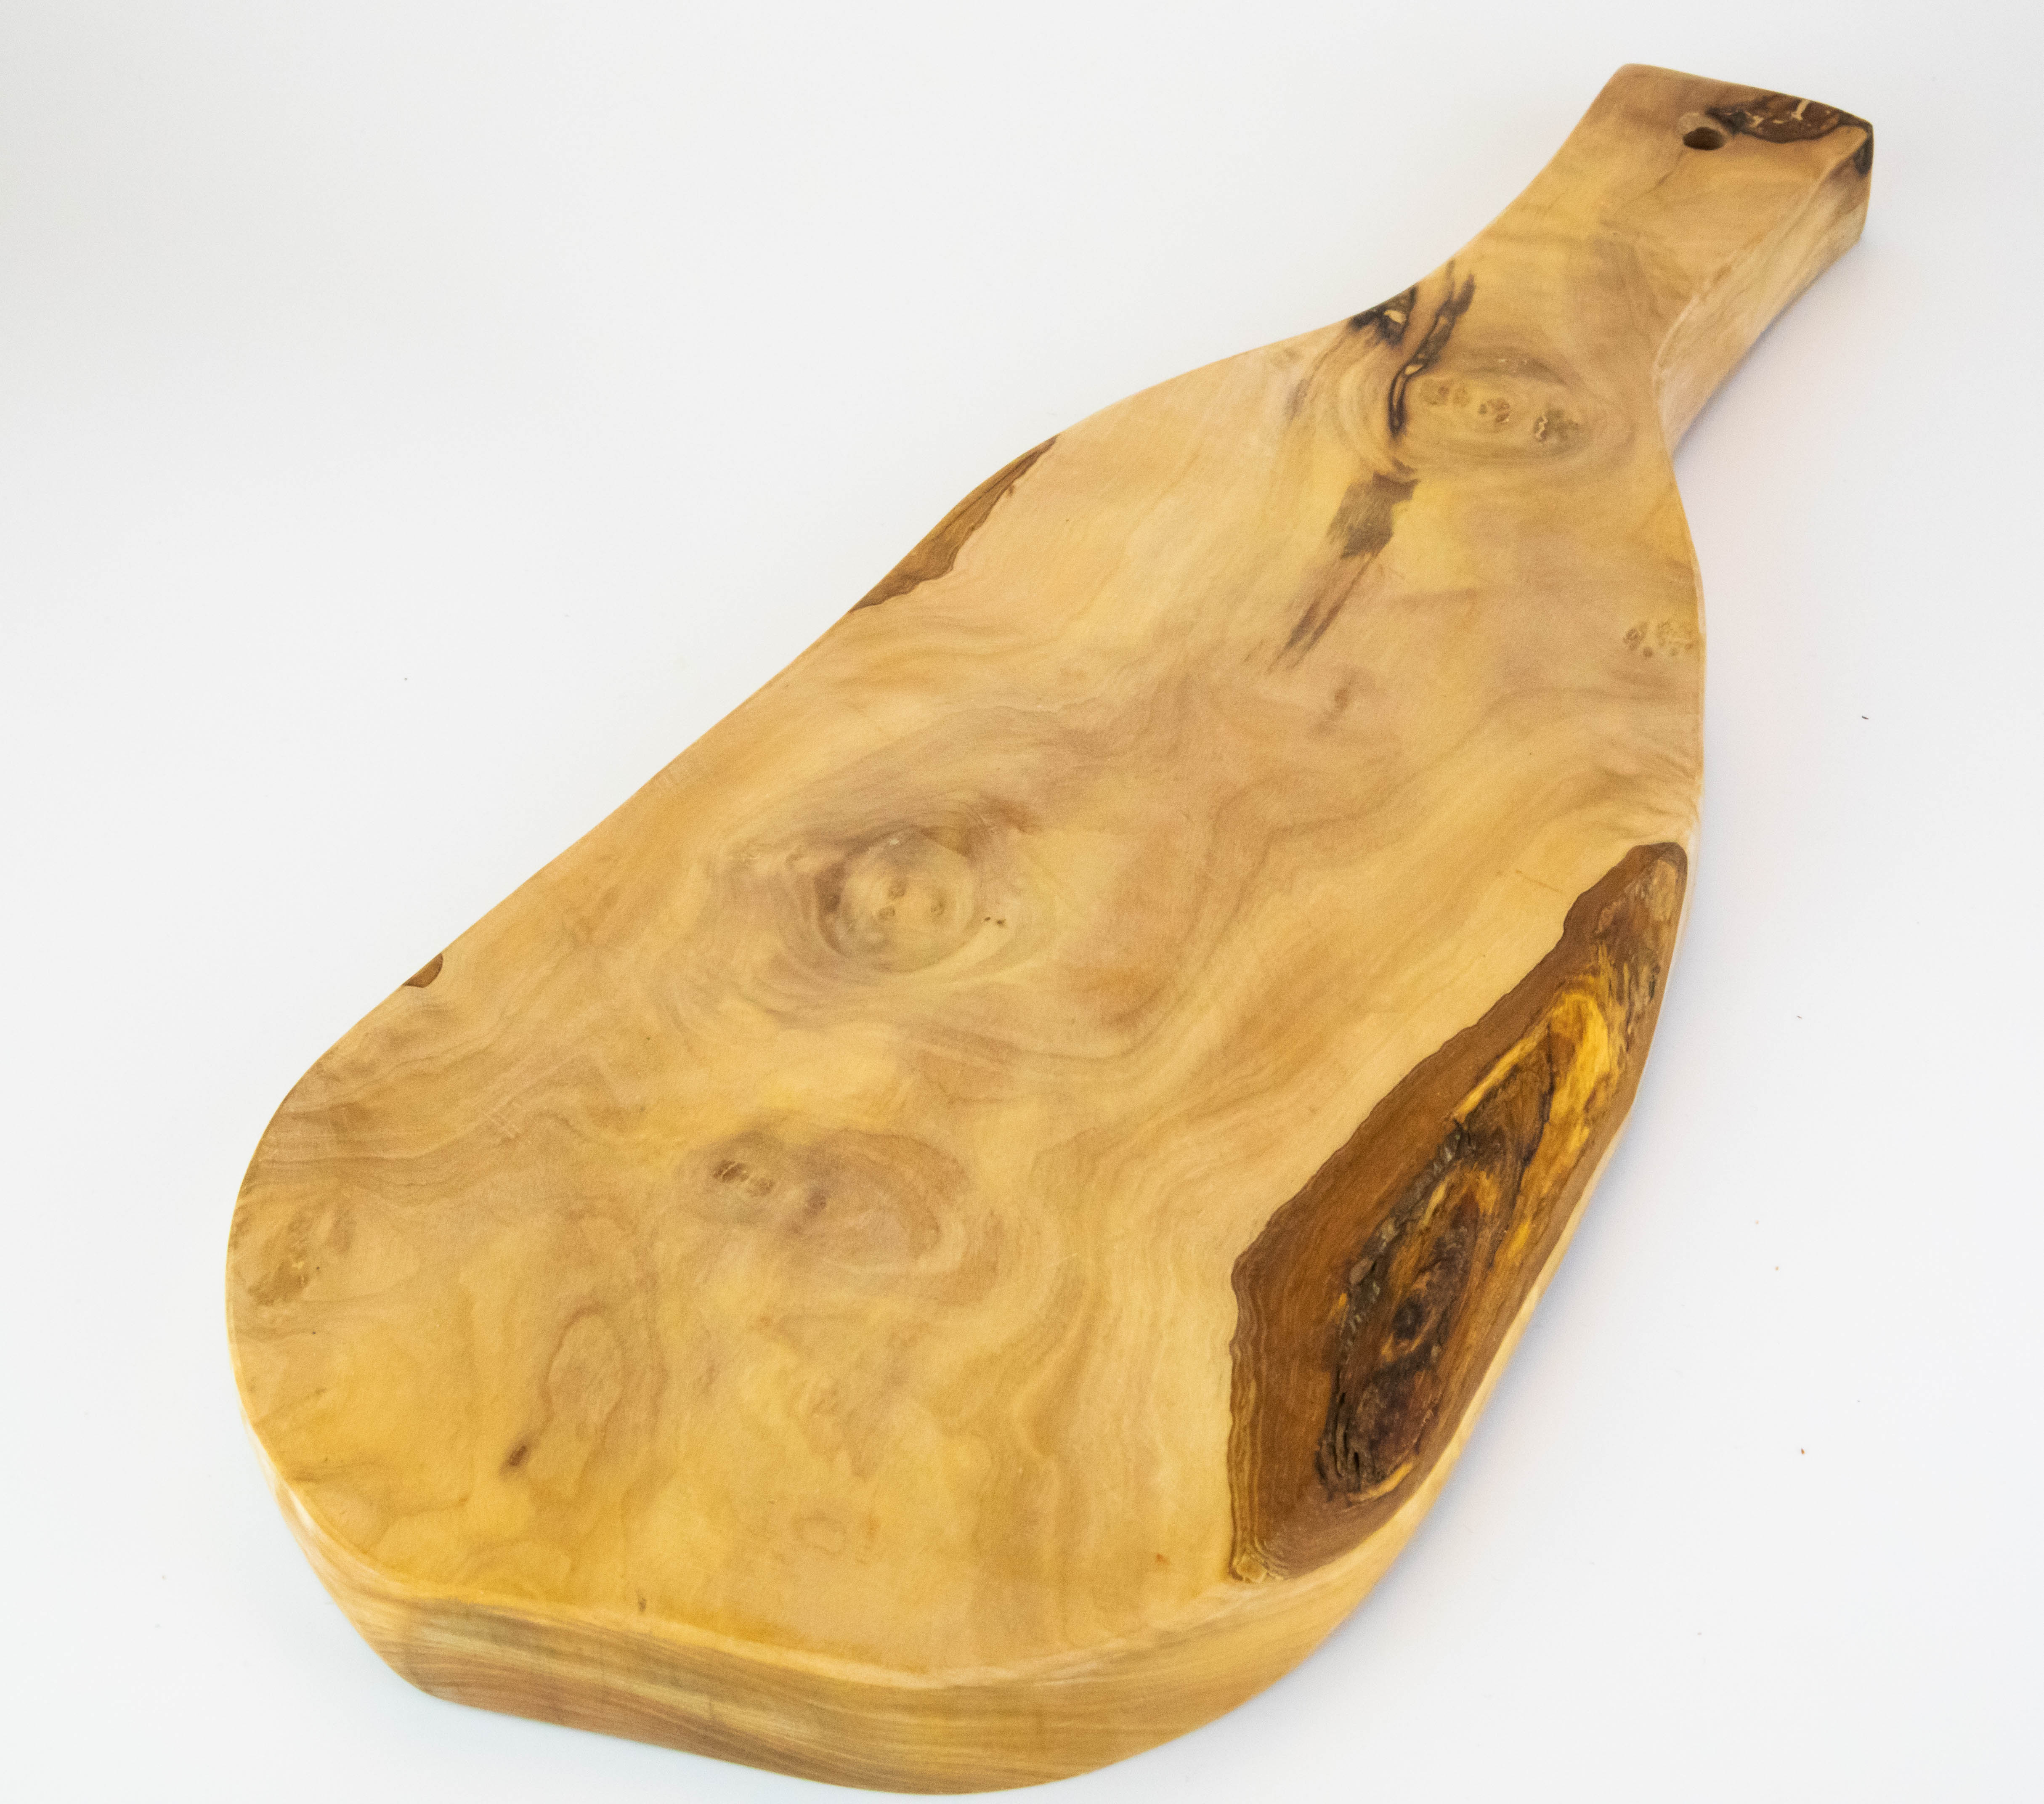 Tabla de servicio rústica con mango de madera de olivo de 40-45 cm.